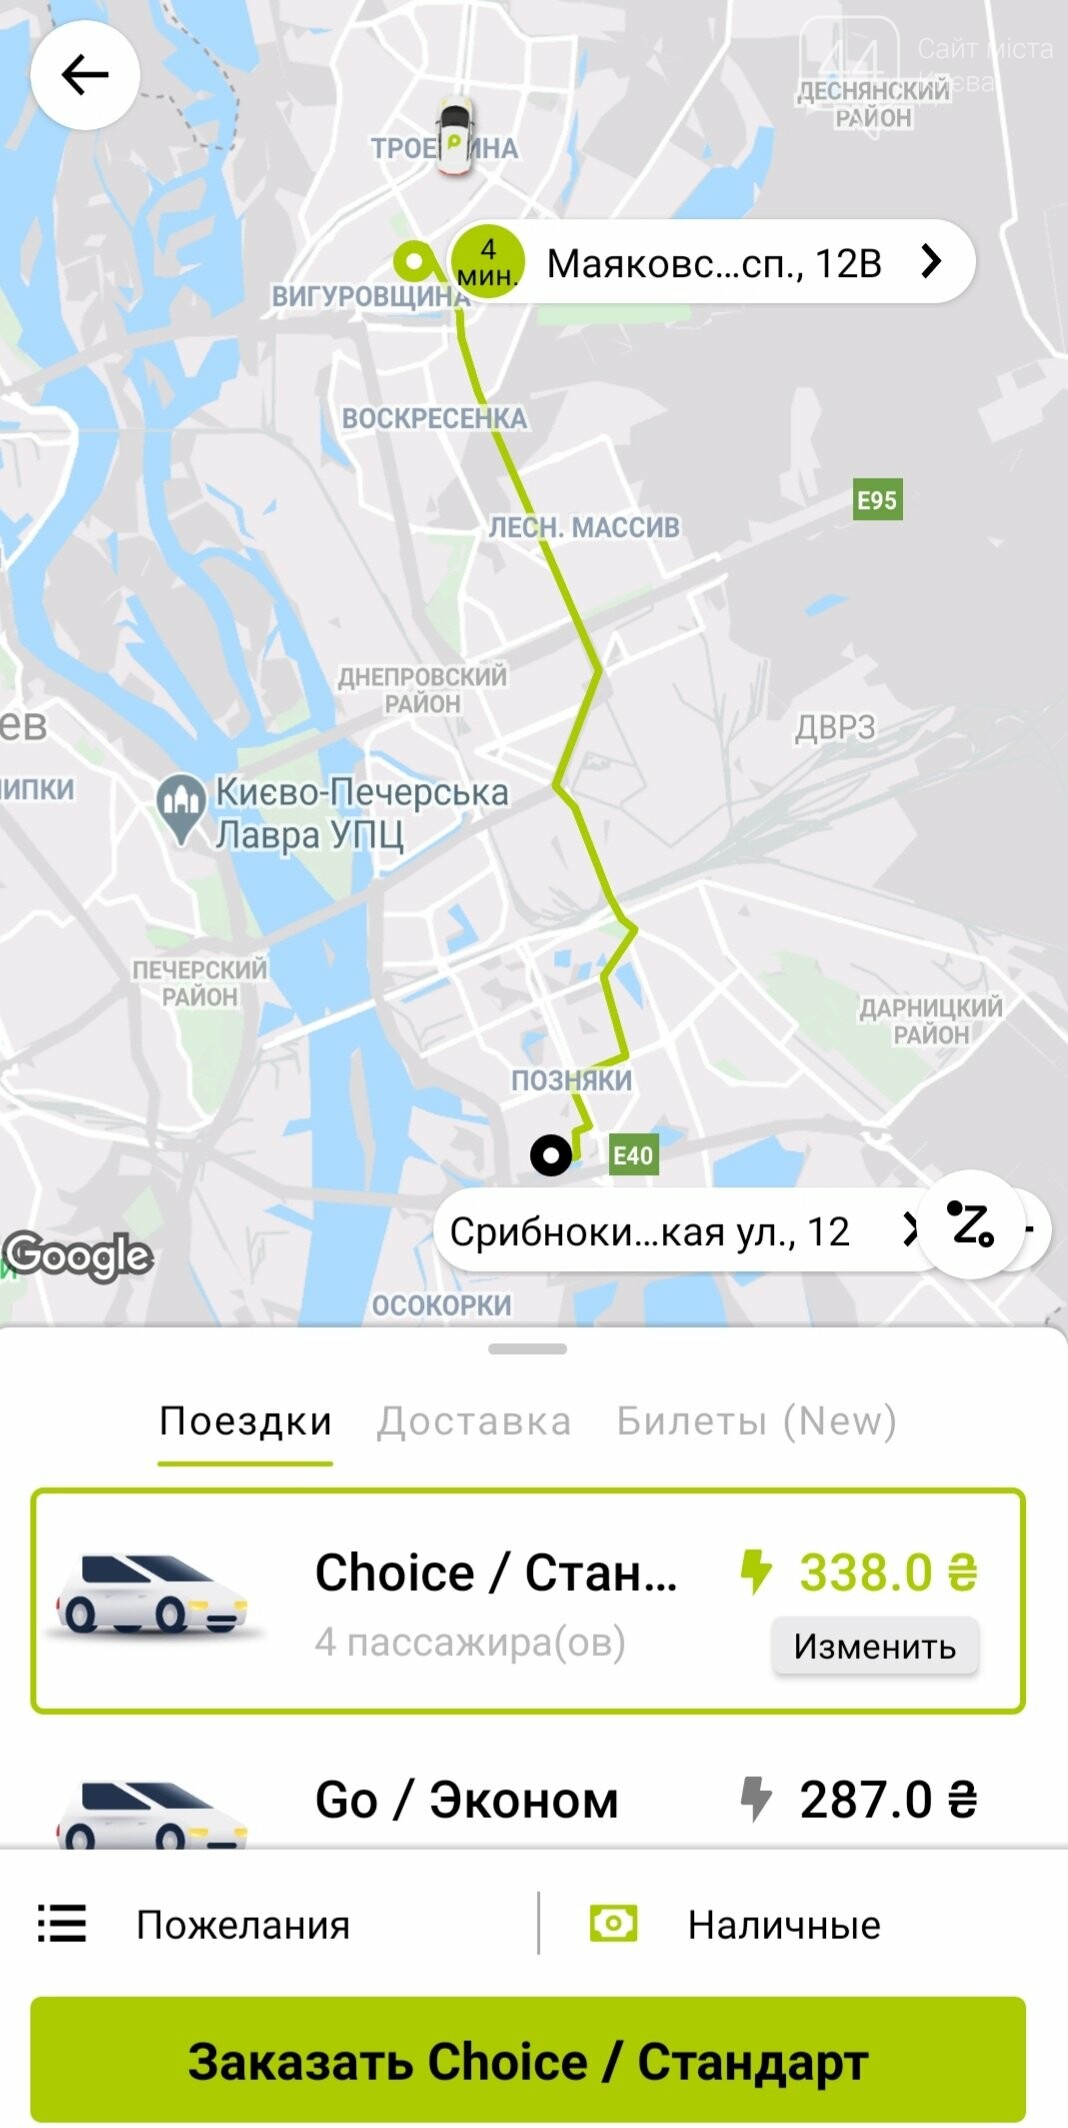 Второй день локдауна в Киеве: что с ценами на такси?